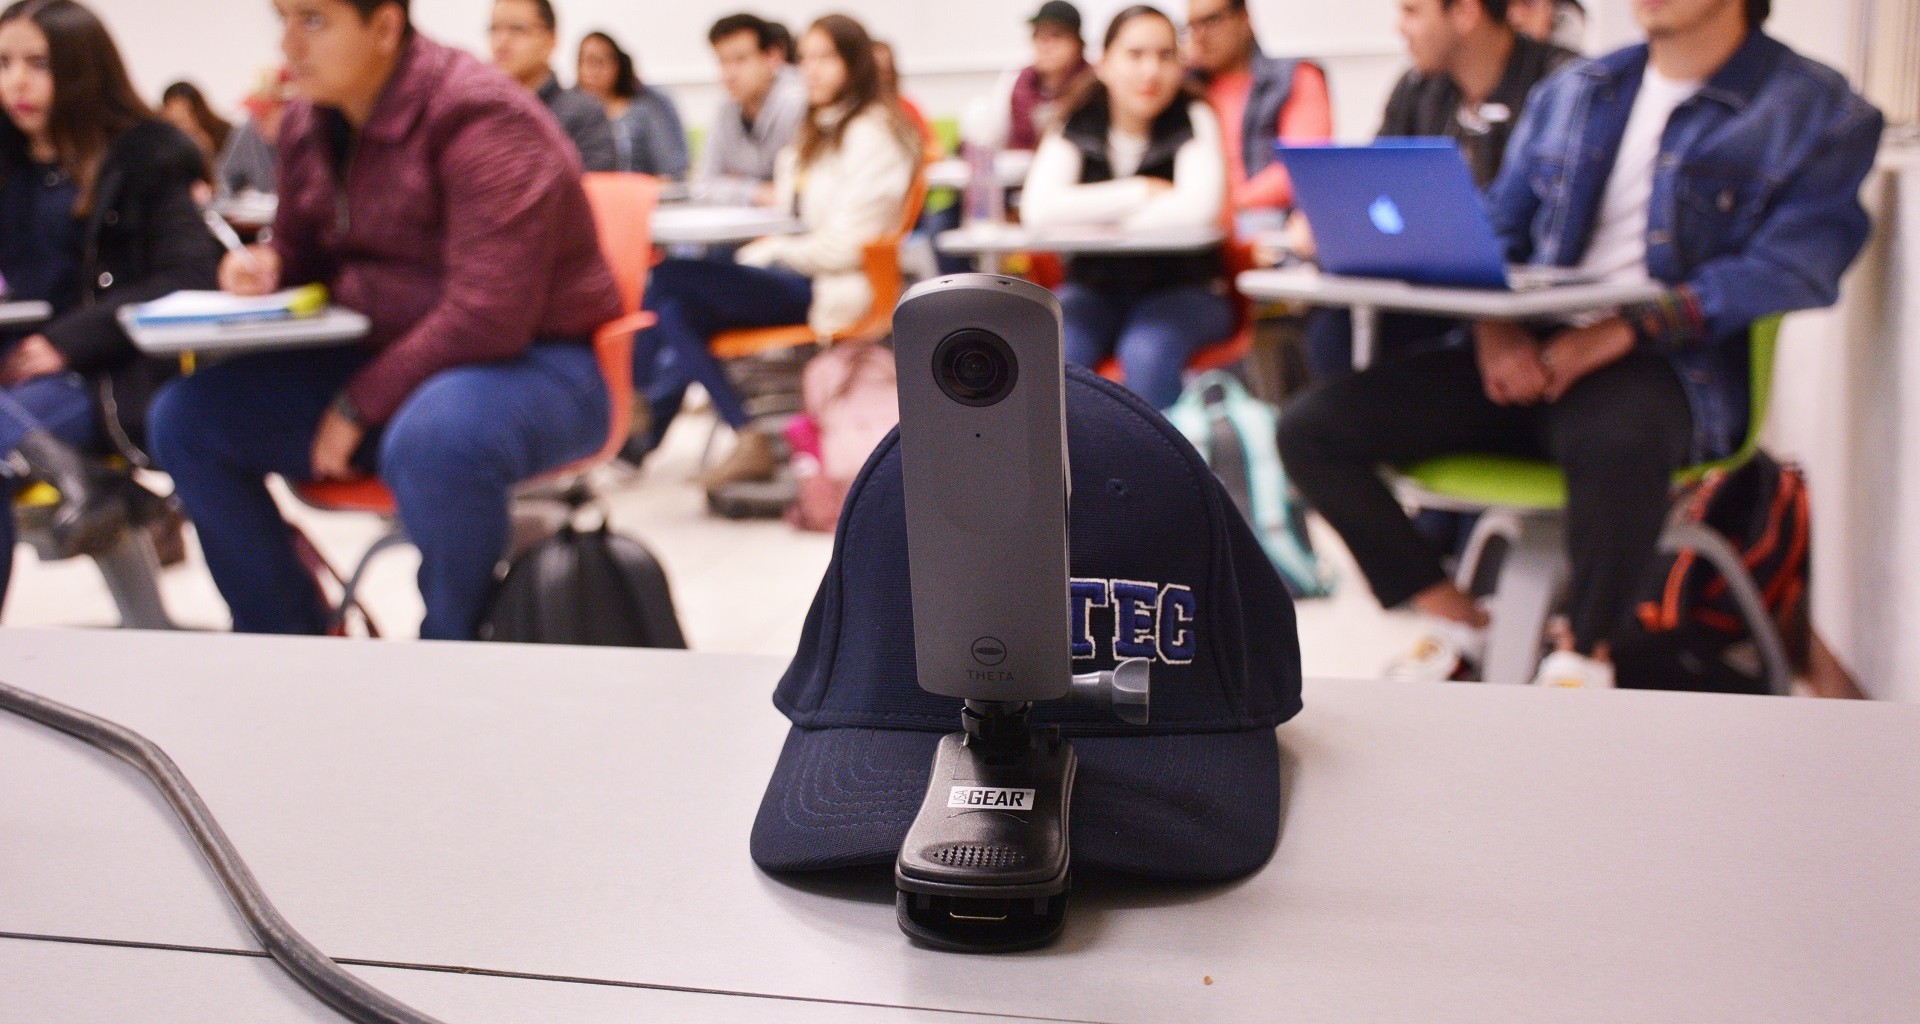 La cámara 360 permite grabar las clases 